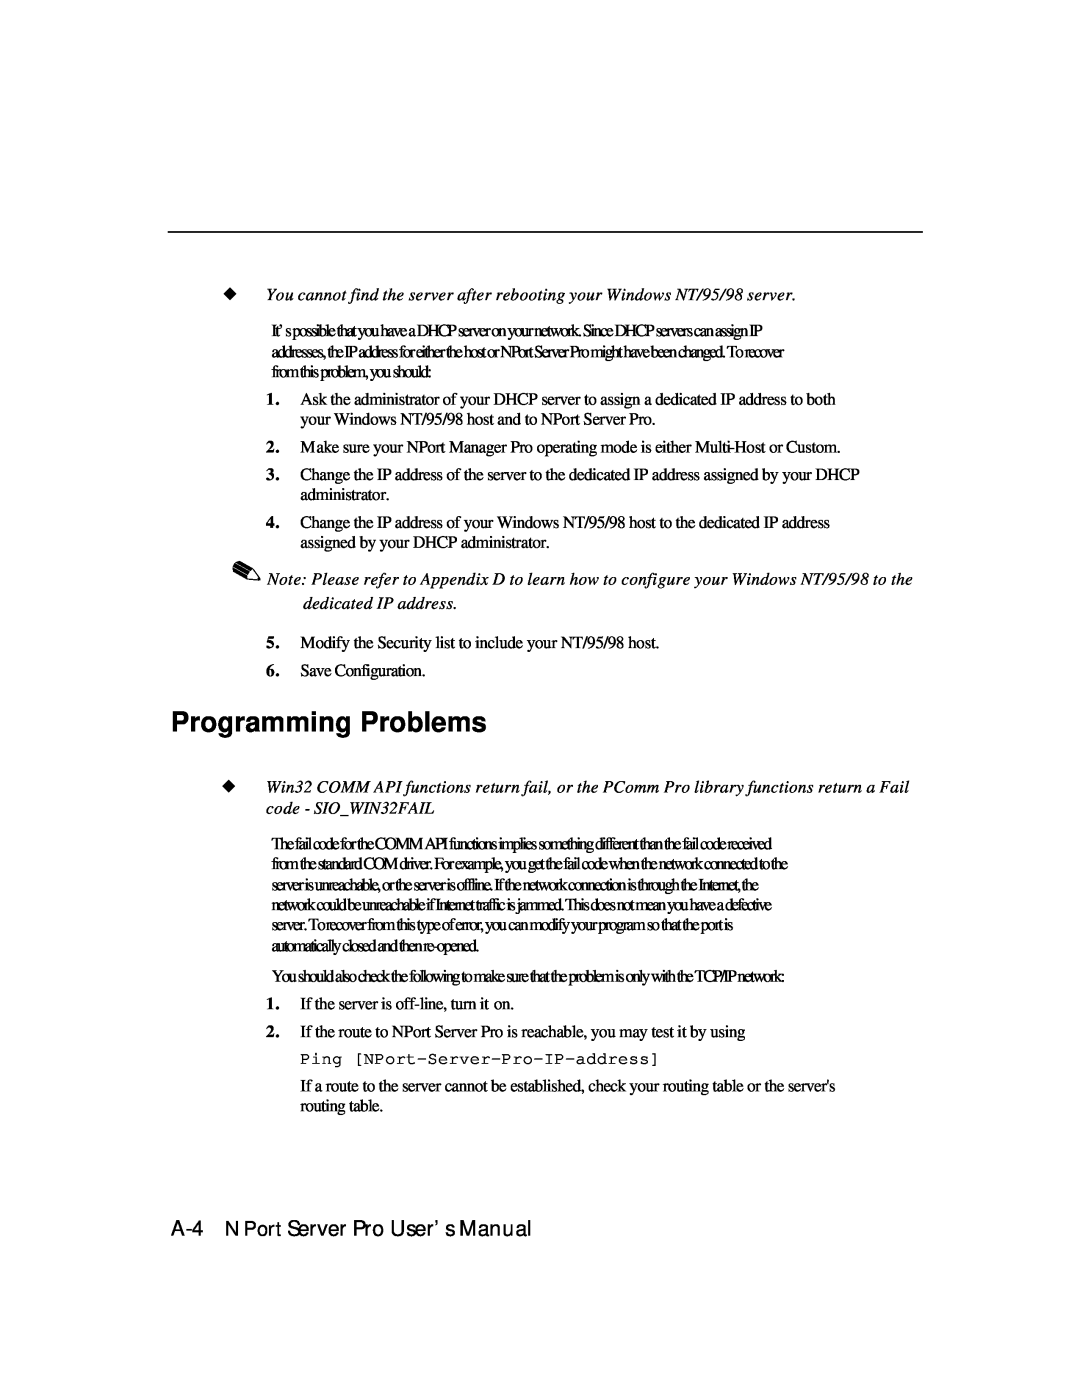 Moxa Technologies DE-303, DE-308 manual Programming Problems, A-4 NPort Server Pro User’s Manual 